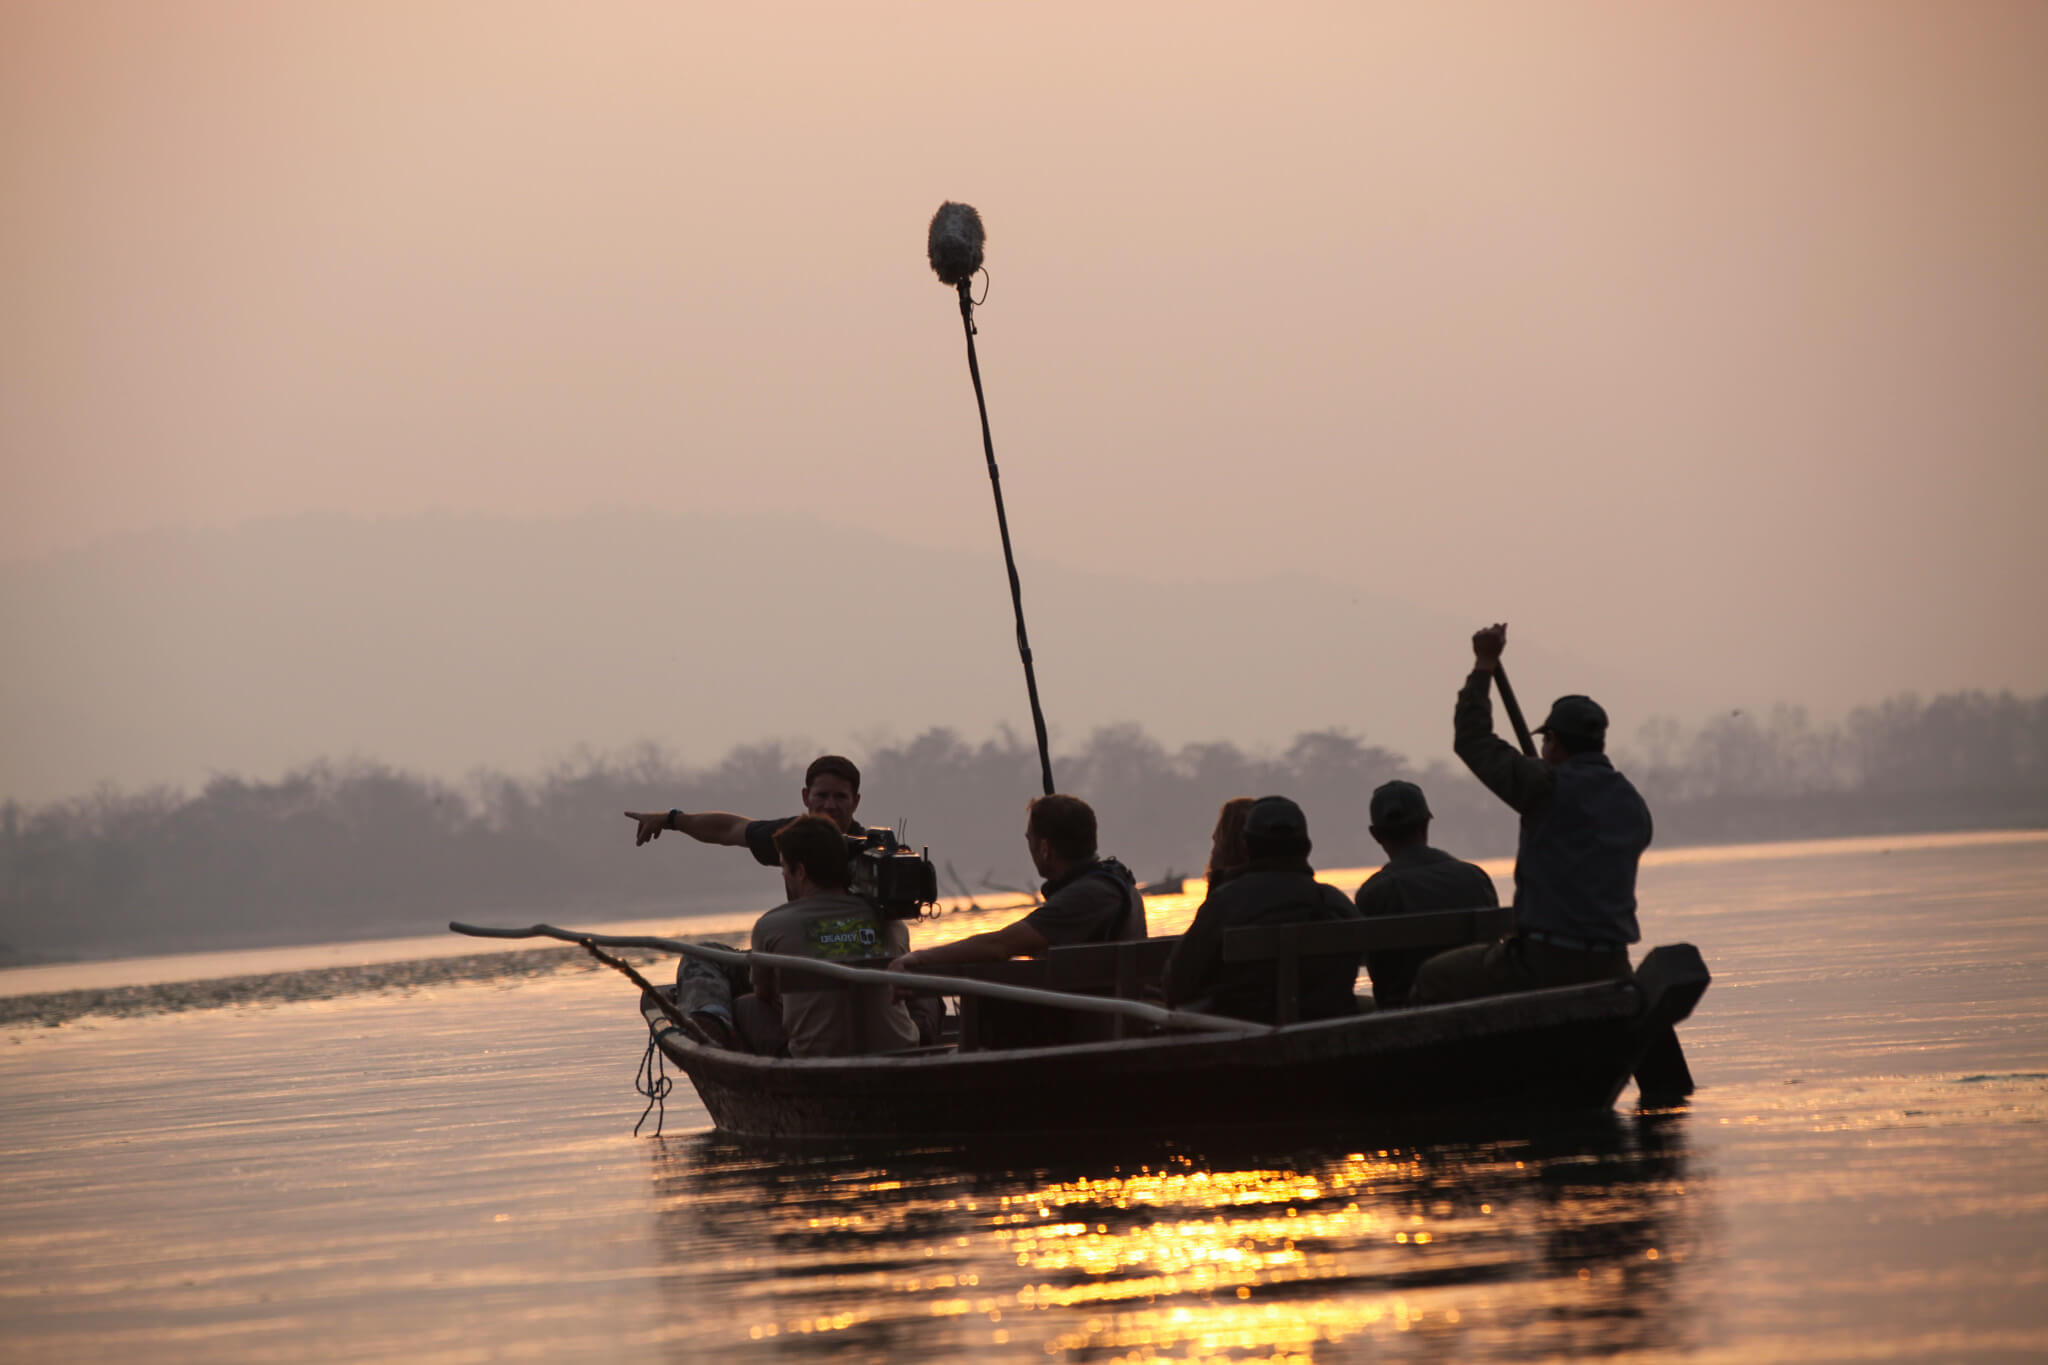 Filming Chitwan Safari Boat Ride